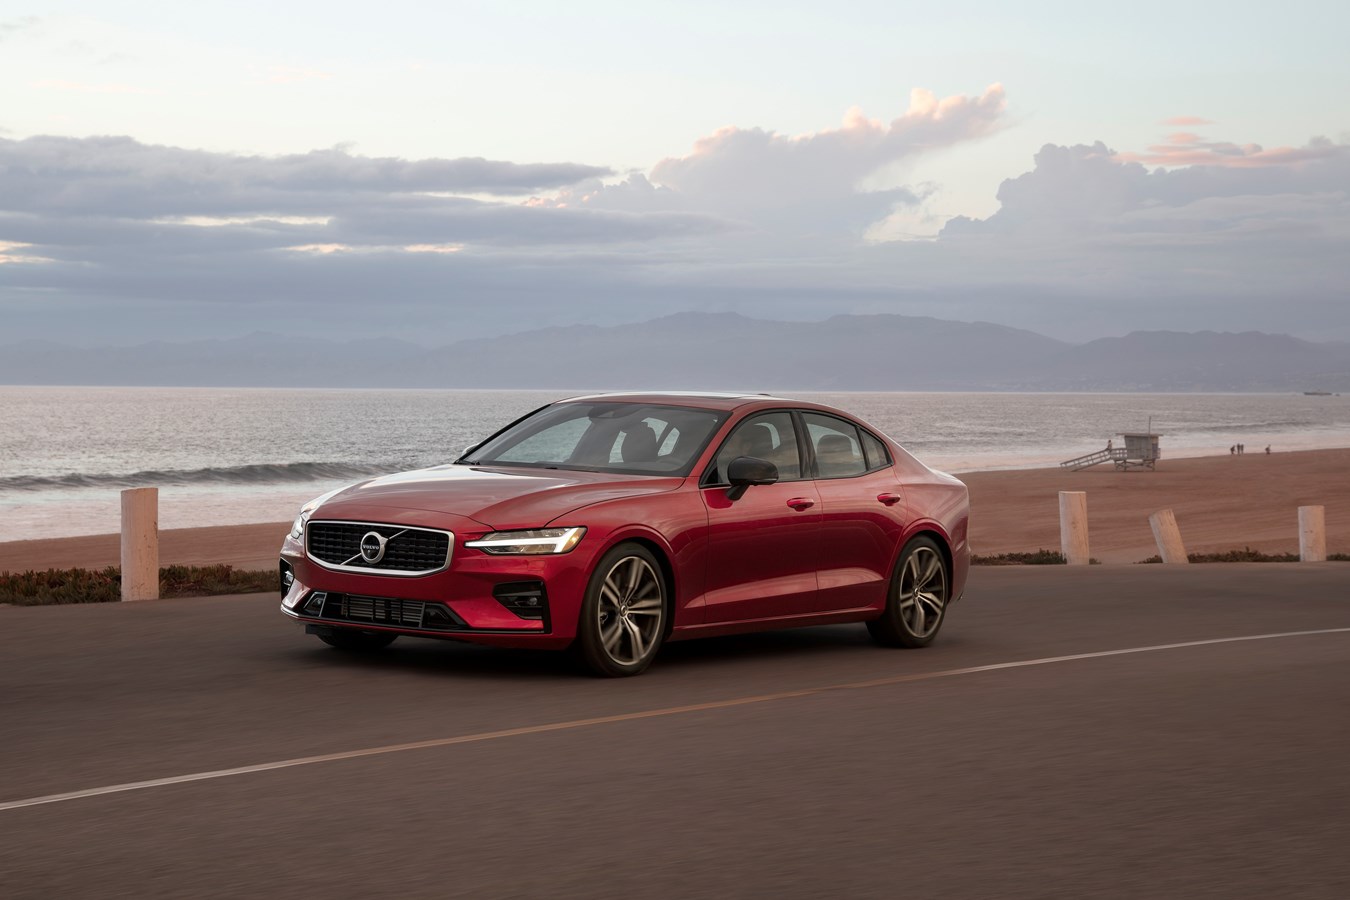 Volvo Cars ограничит максимальную скорость на своих автомобилях до 180 км/ч